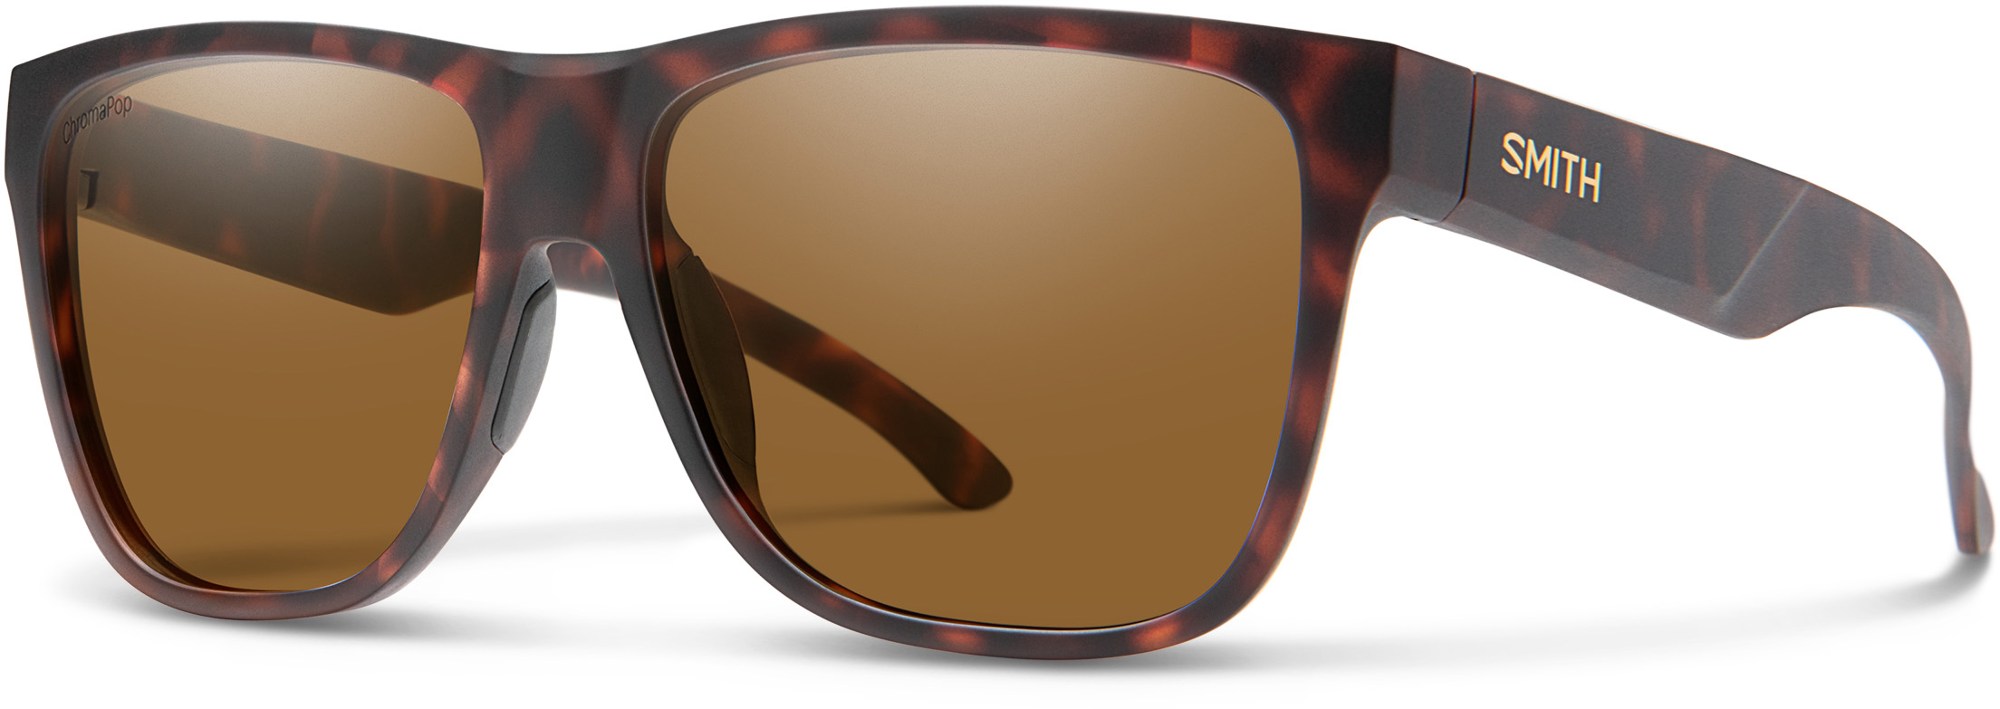 Поляризованные солнцезащитные очки Lowdown XL 2 ChromaPop Smith, коричневый цена и фото